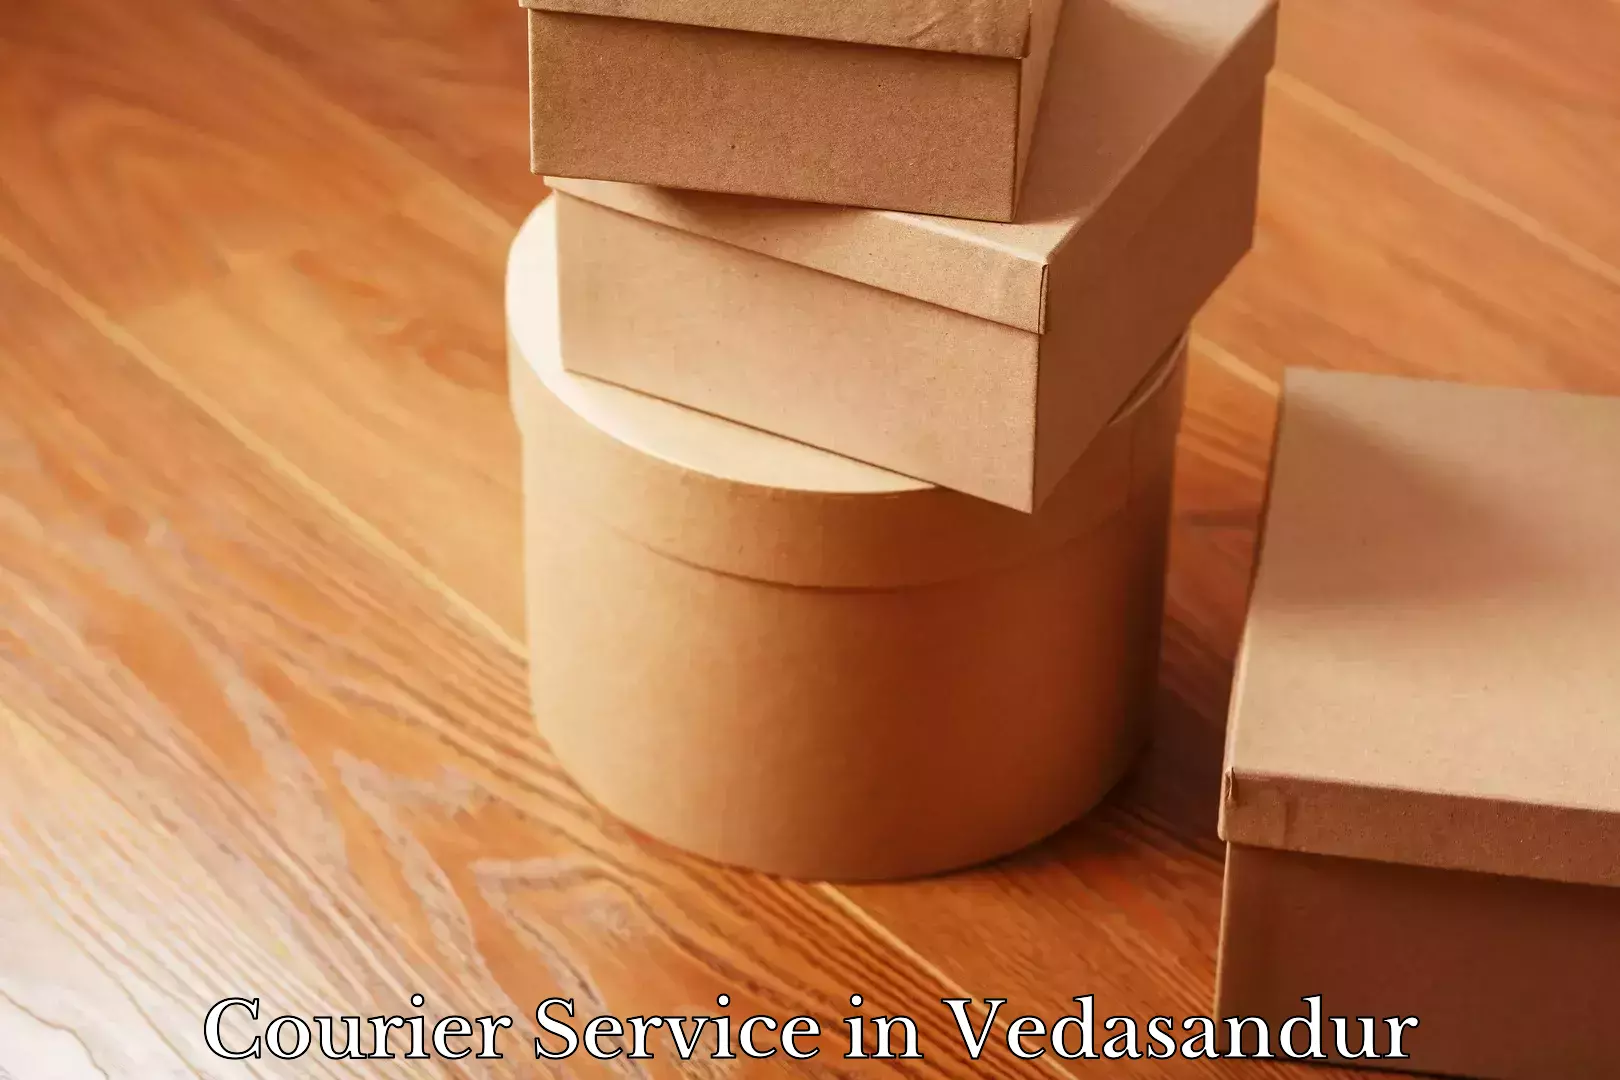 Courier dispatch services in Vedasandur